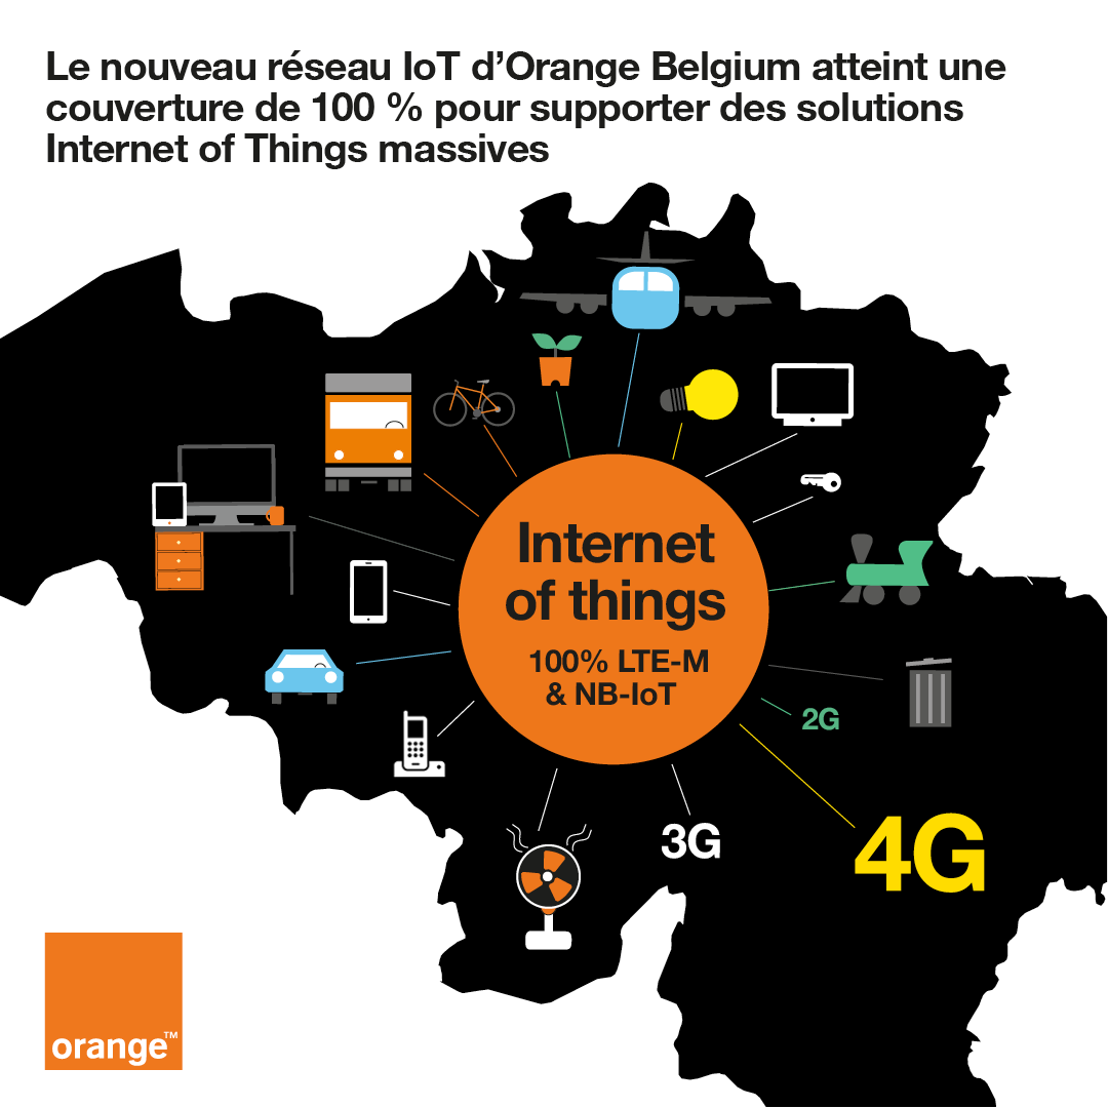 Le nouveau réseau IoT d’Orange Belgium atteint une couverture de 100 % pour supporter des solutions Internet of Things massives